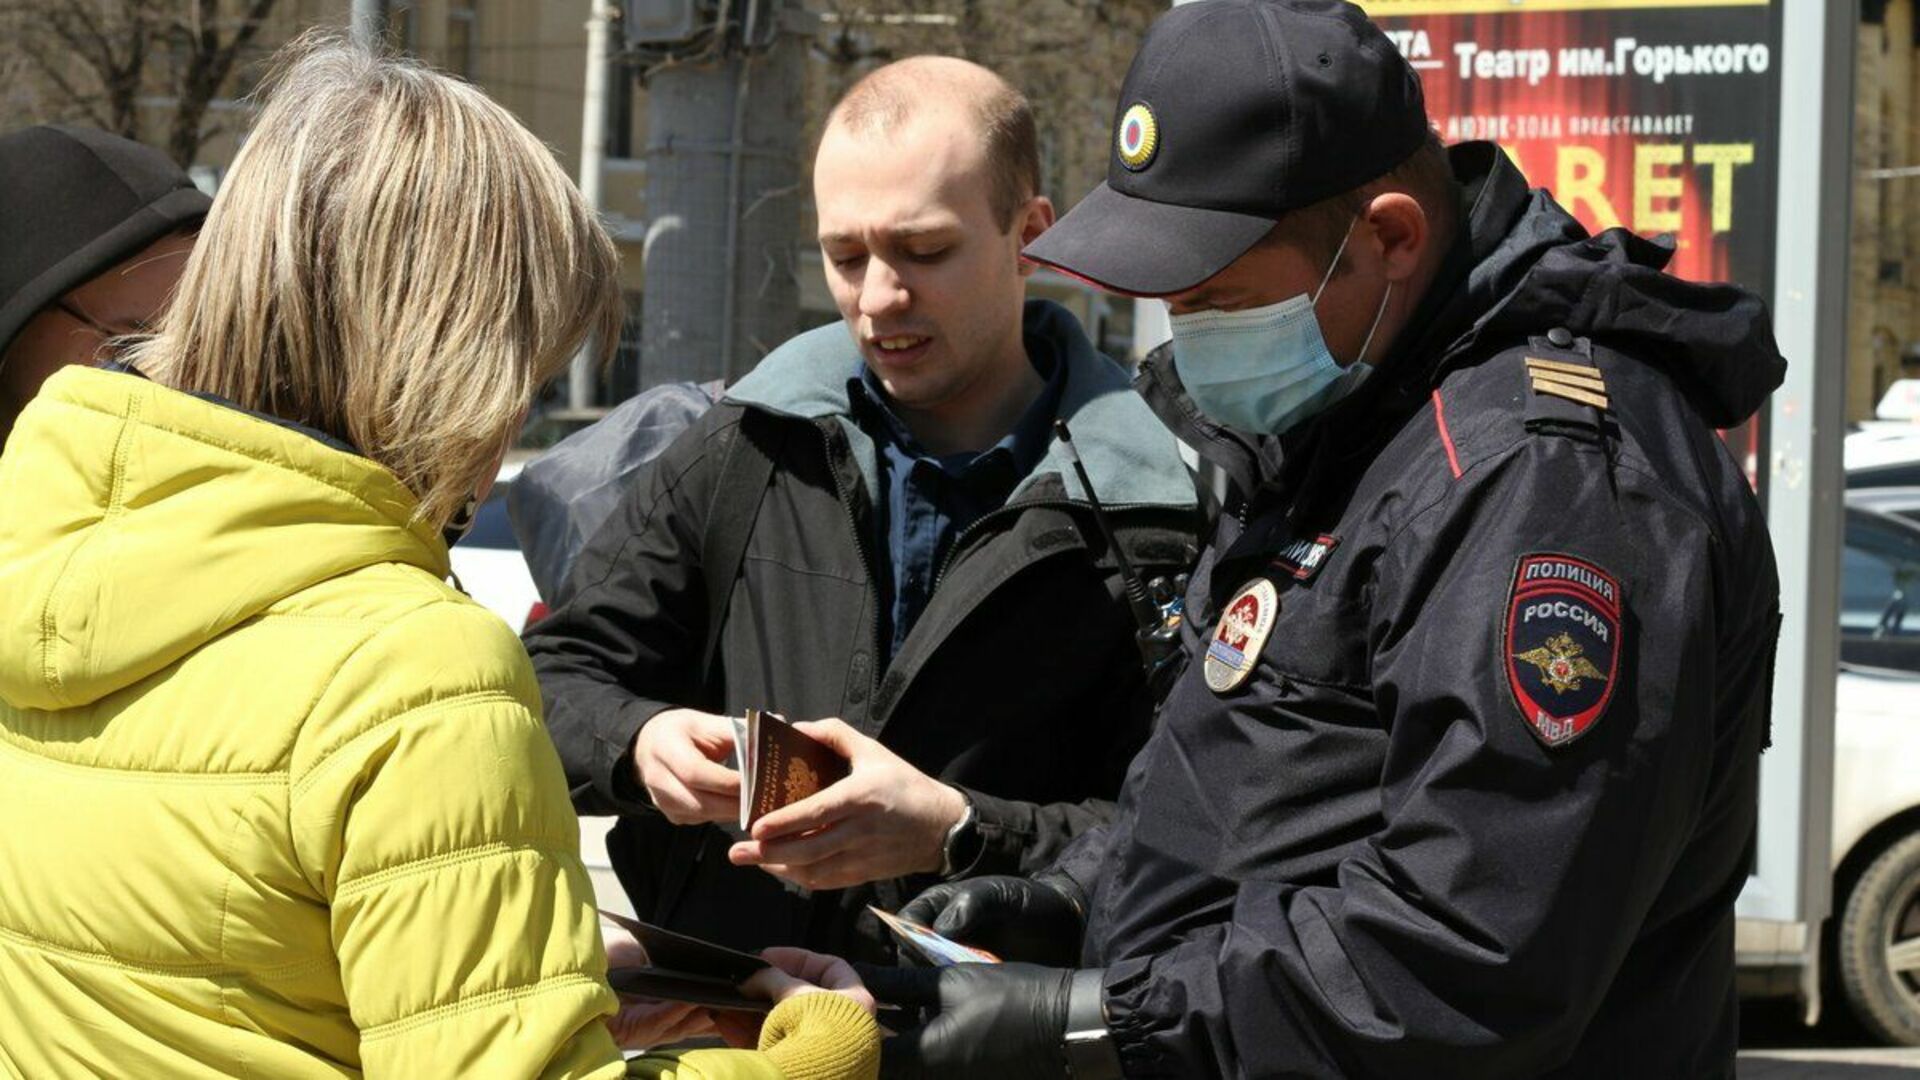 Полицейские проверяют телефоны. Полиция проверяет документы. Неповиновение сотруднику полиции.